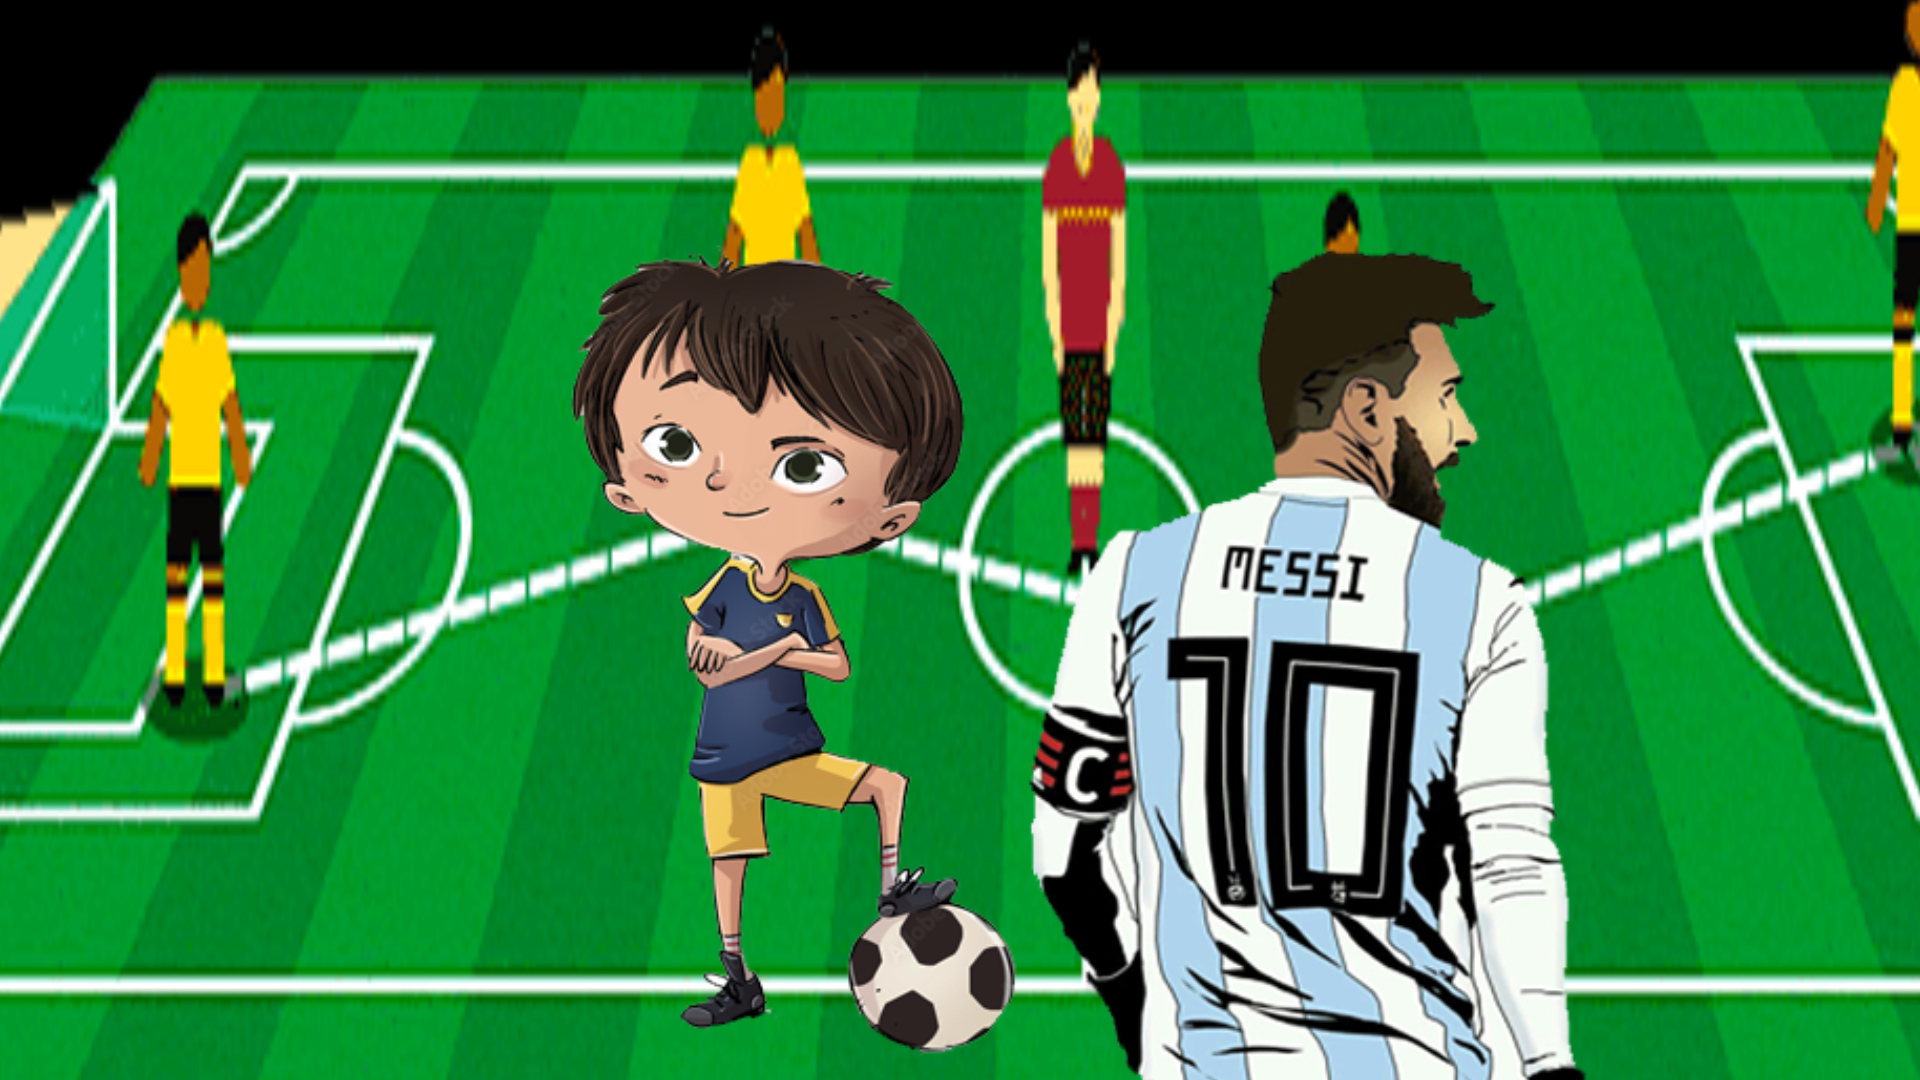 Messi, una estrella futbolística